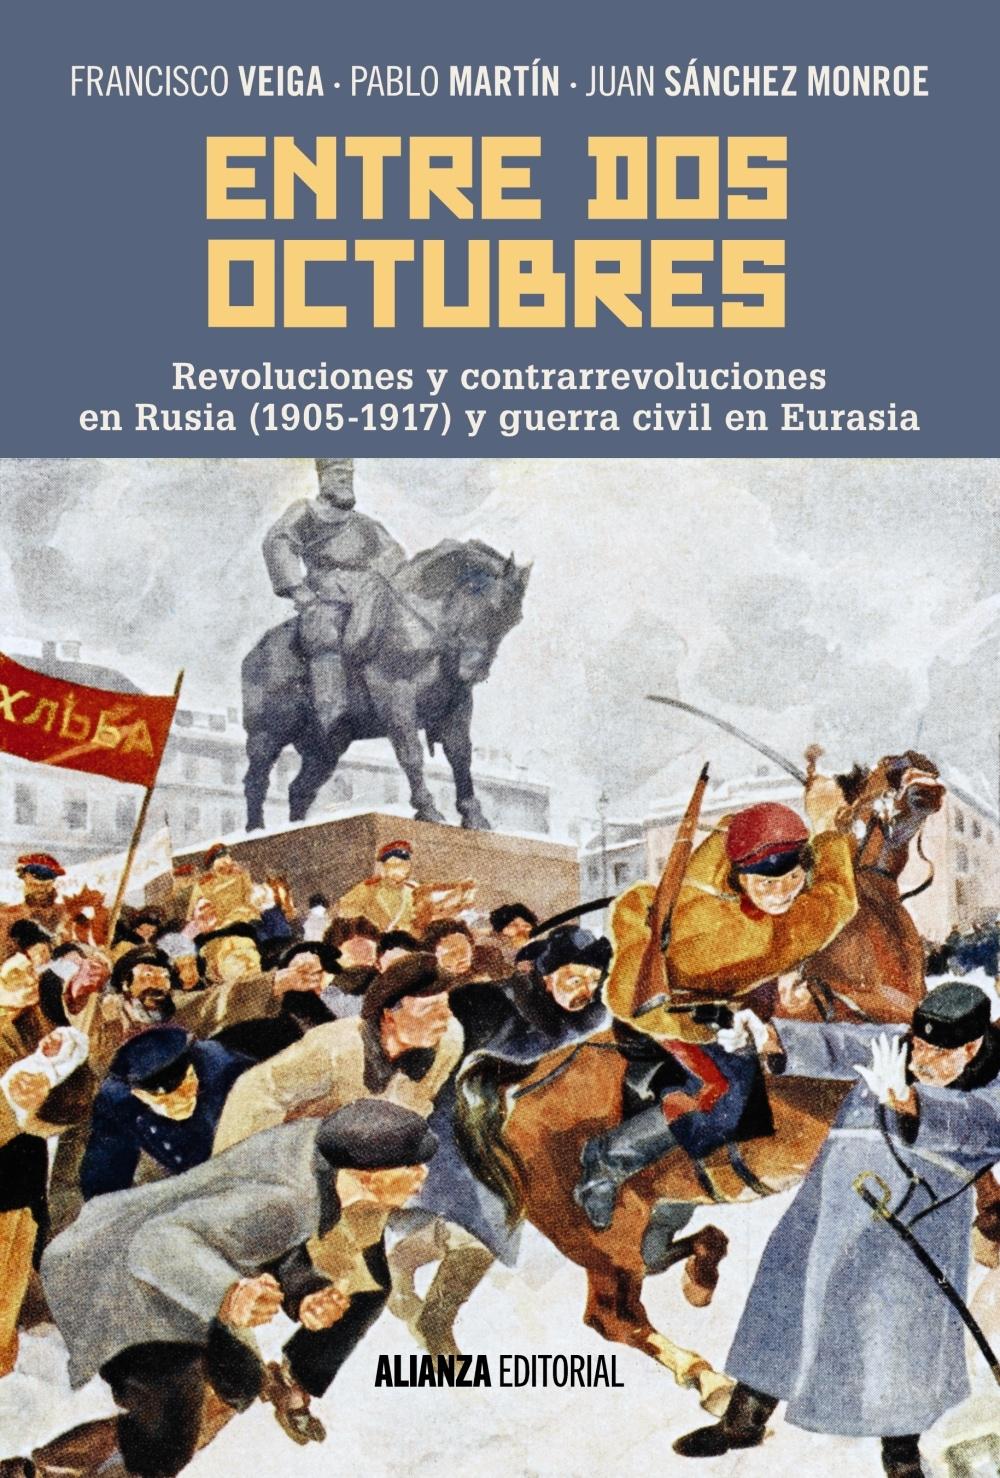 Entre dos octubres "Revoluciones y contrarrevoluciones en Rusia (1905-1917) y guerra en Eura"